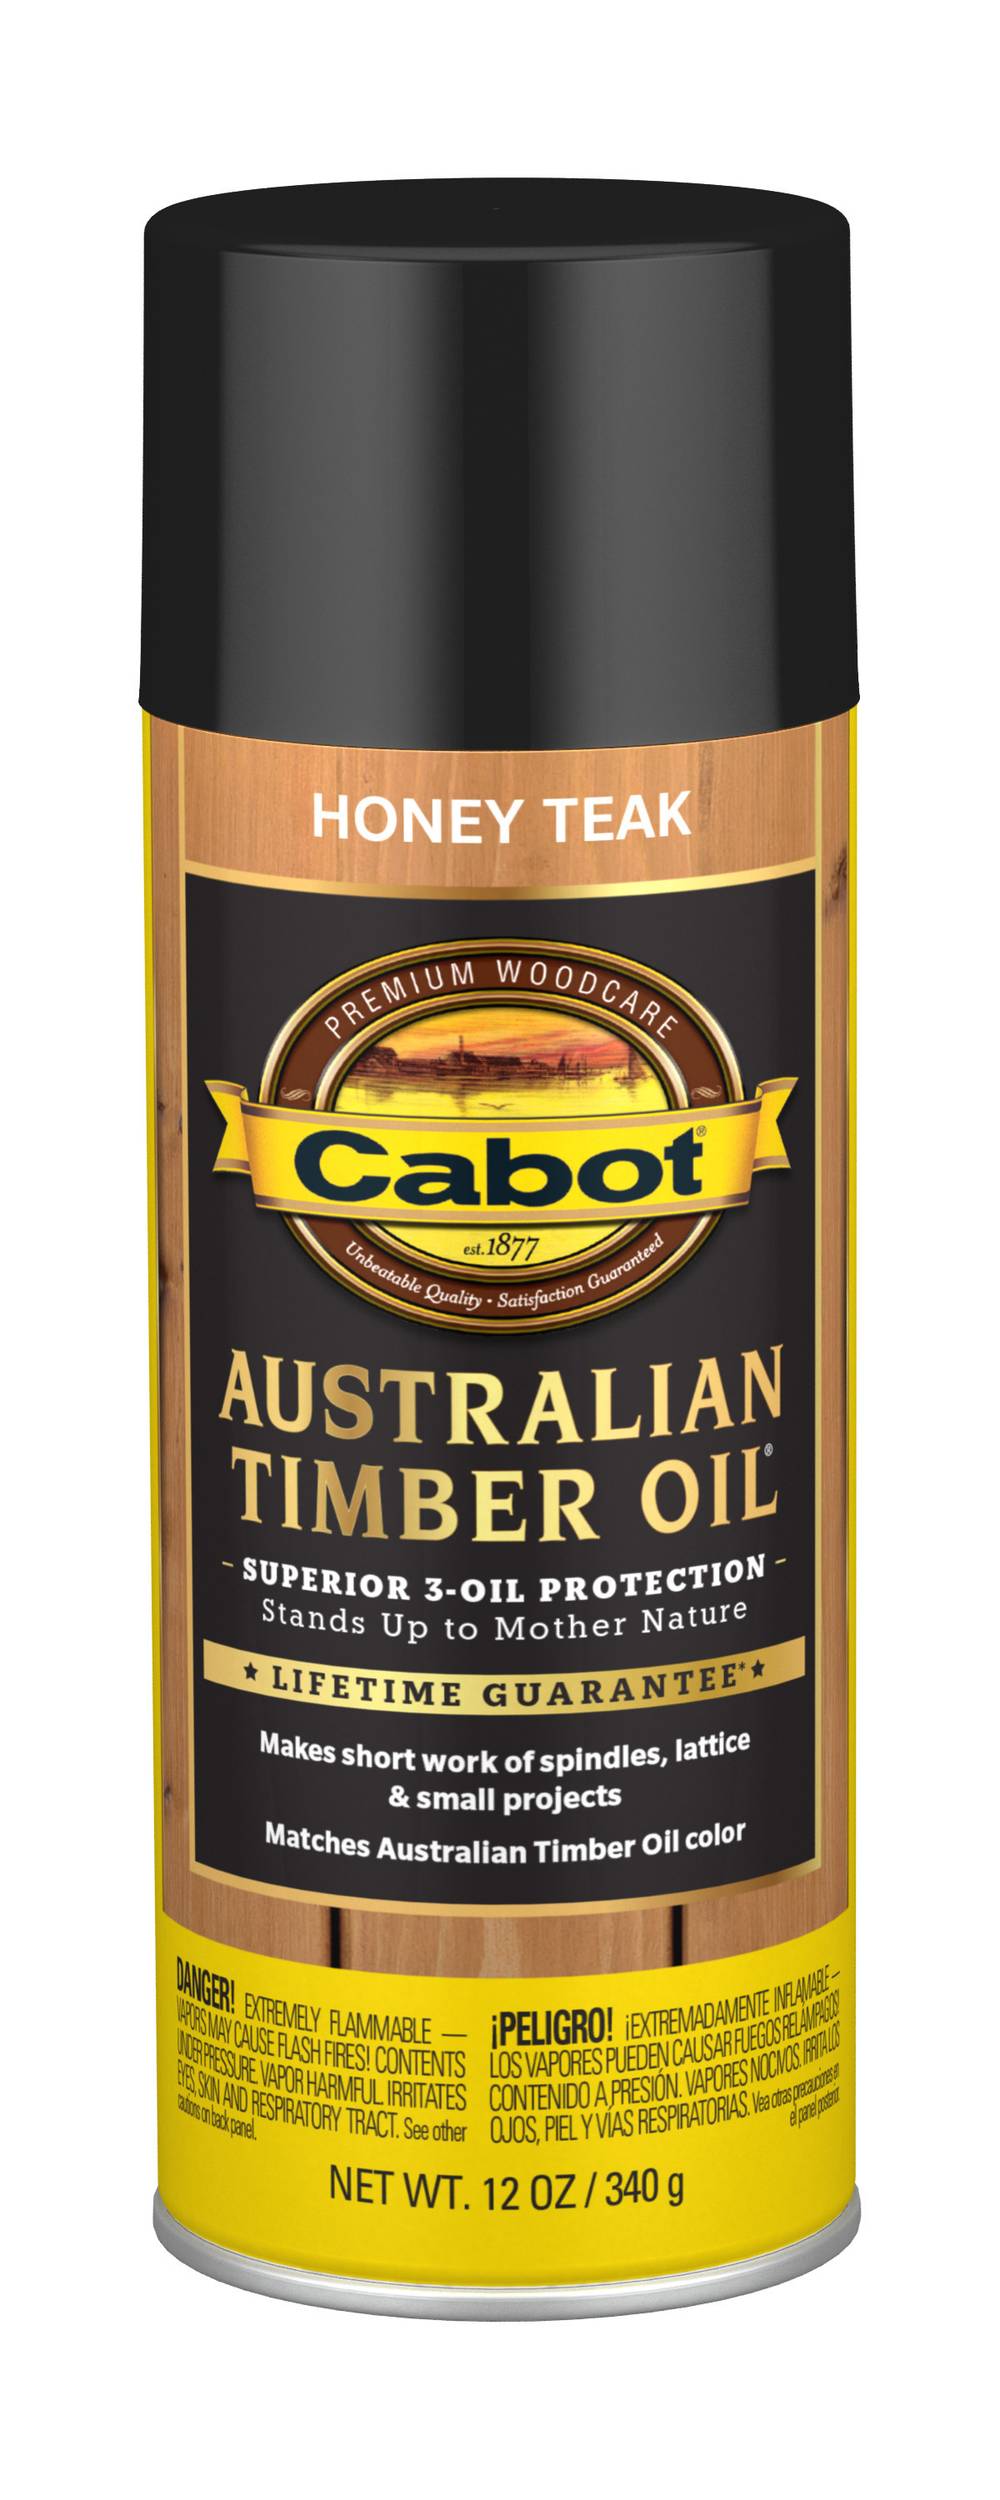 Cabot Australian Timber Oil (honey teak)